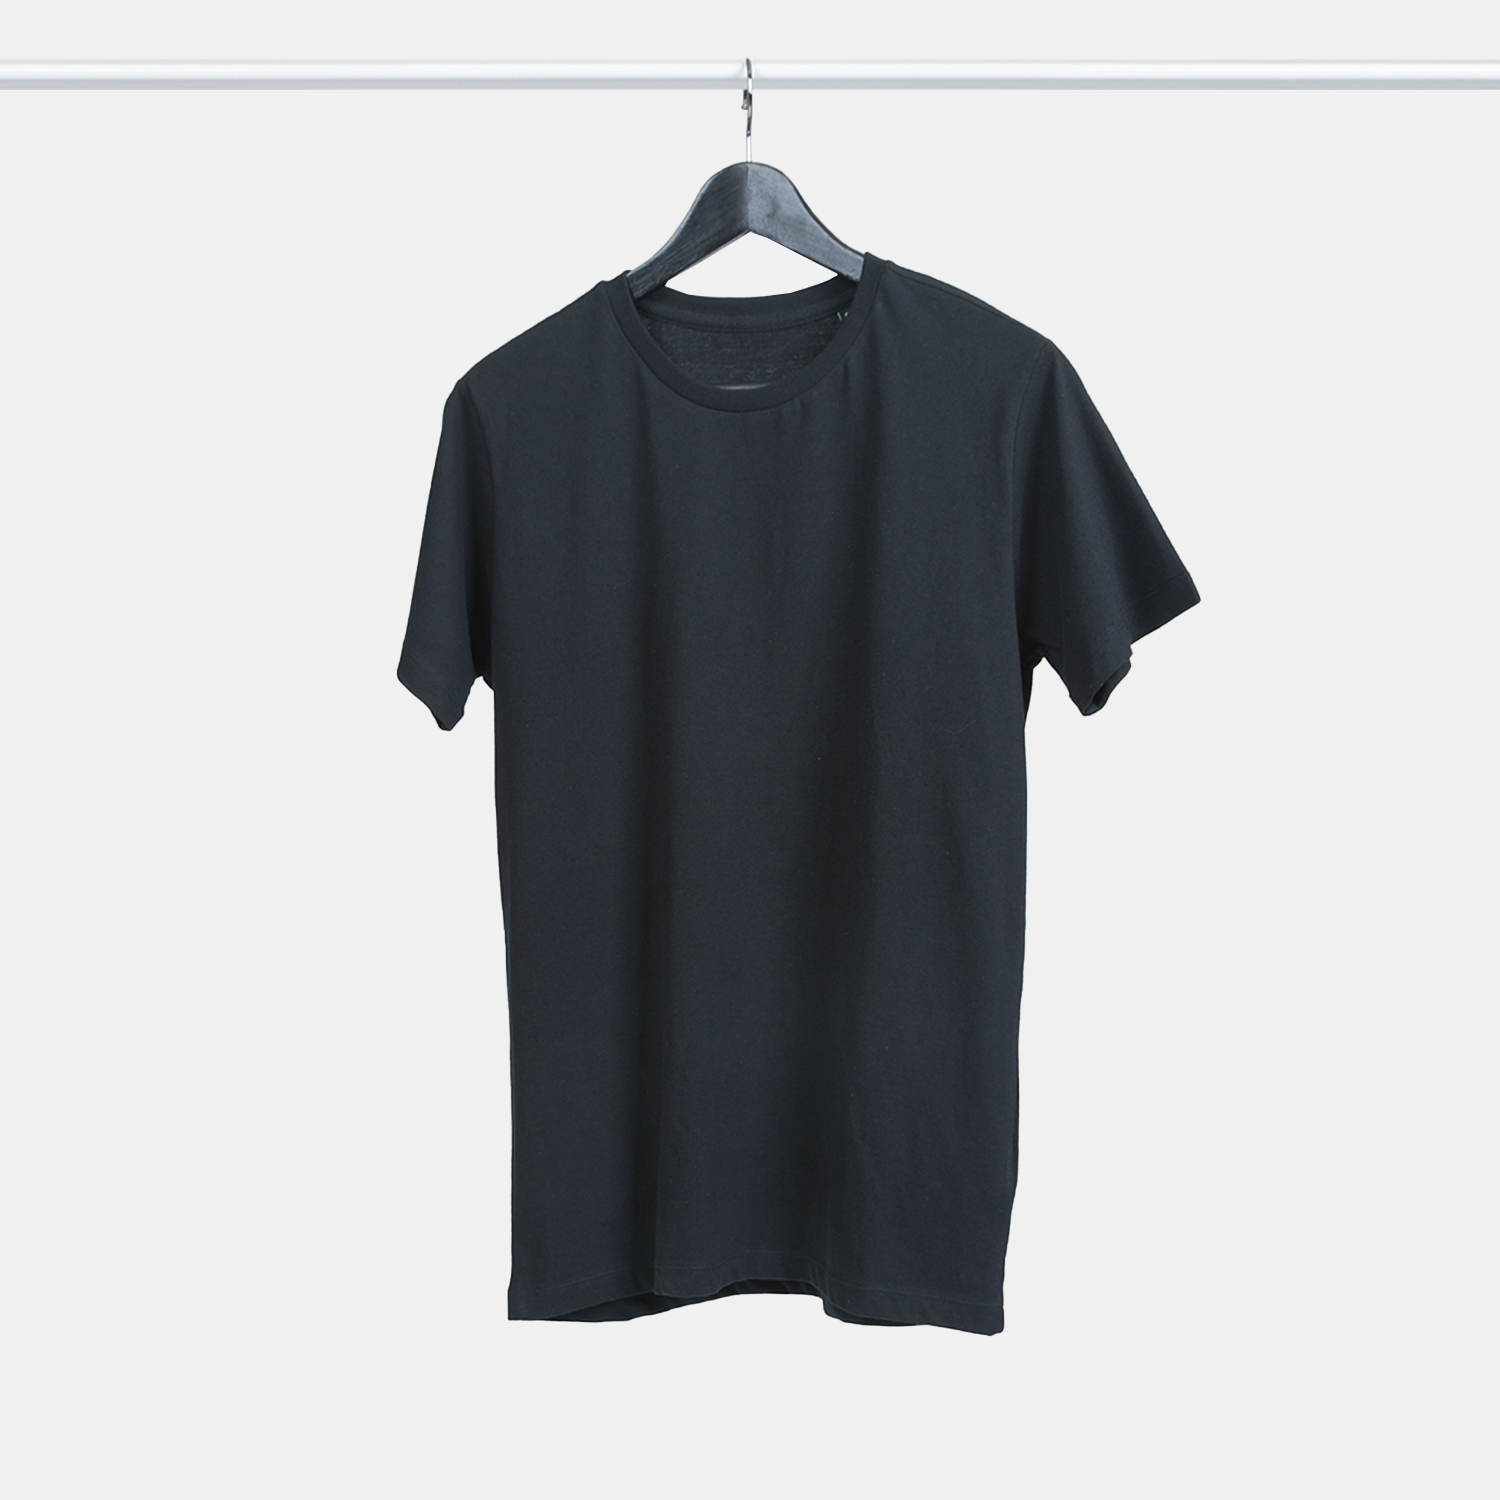 Genanvendt T-shirt i sort til mænd fra A-PIONEER